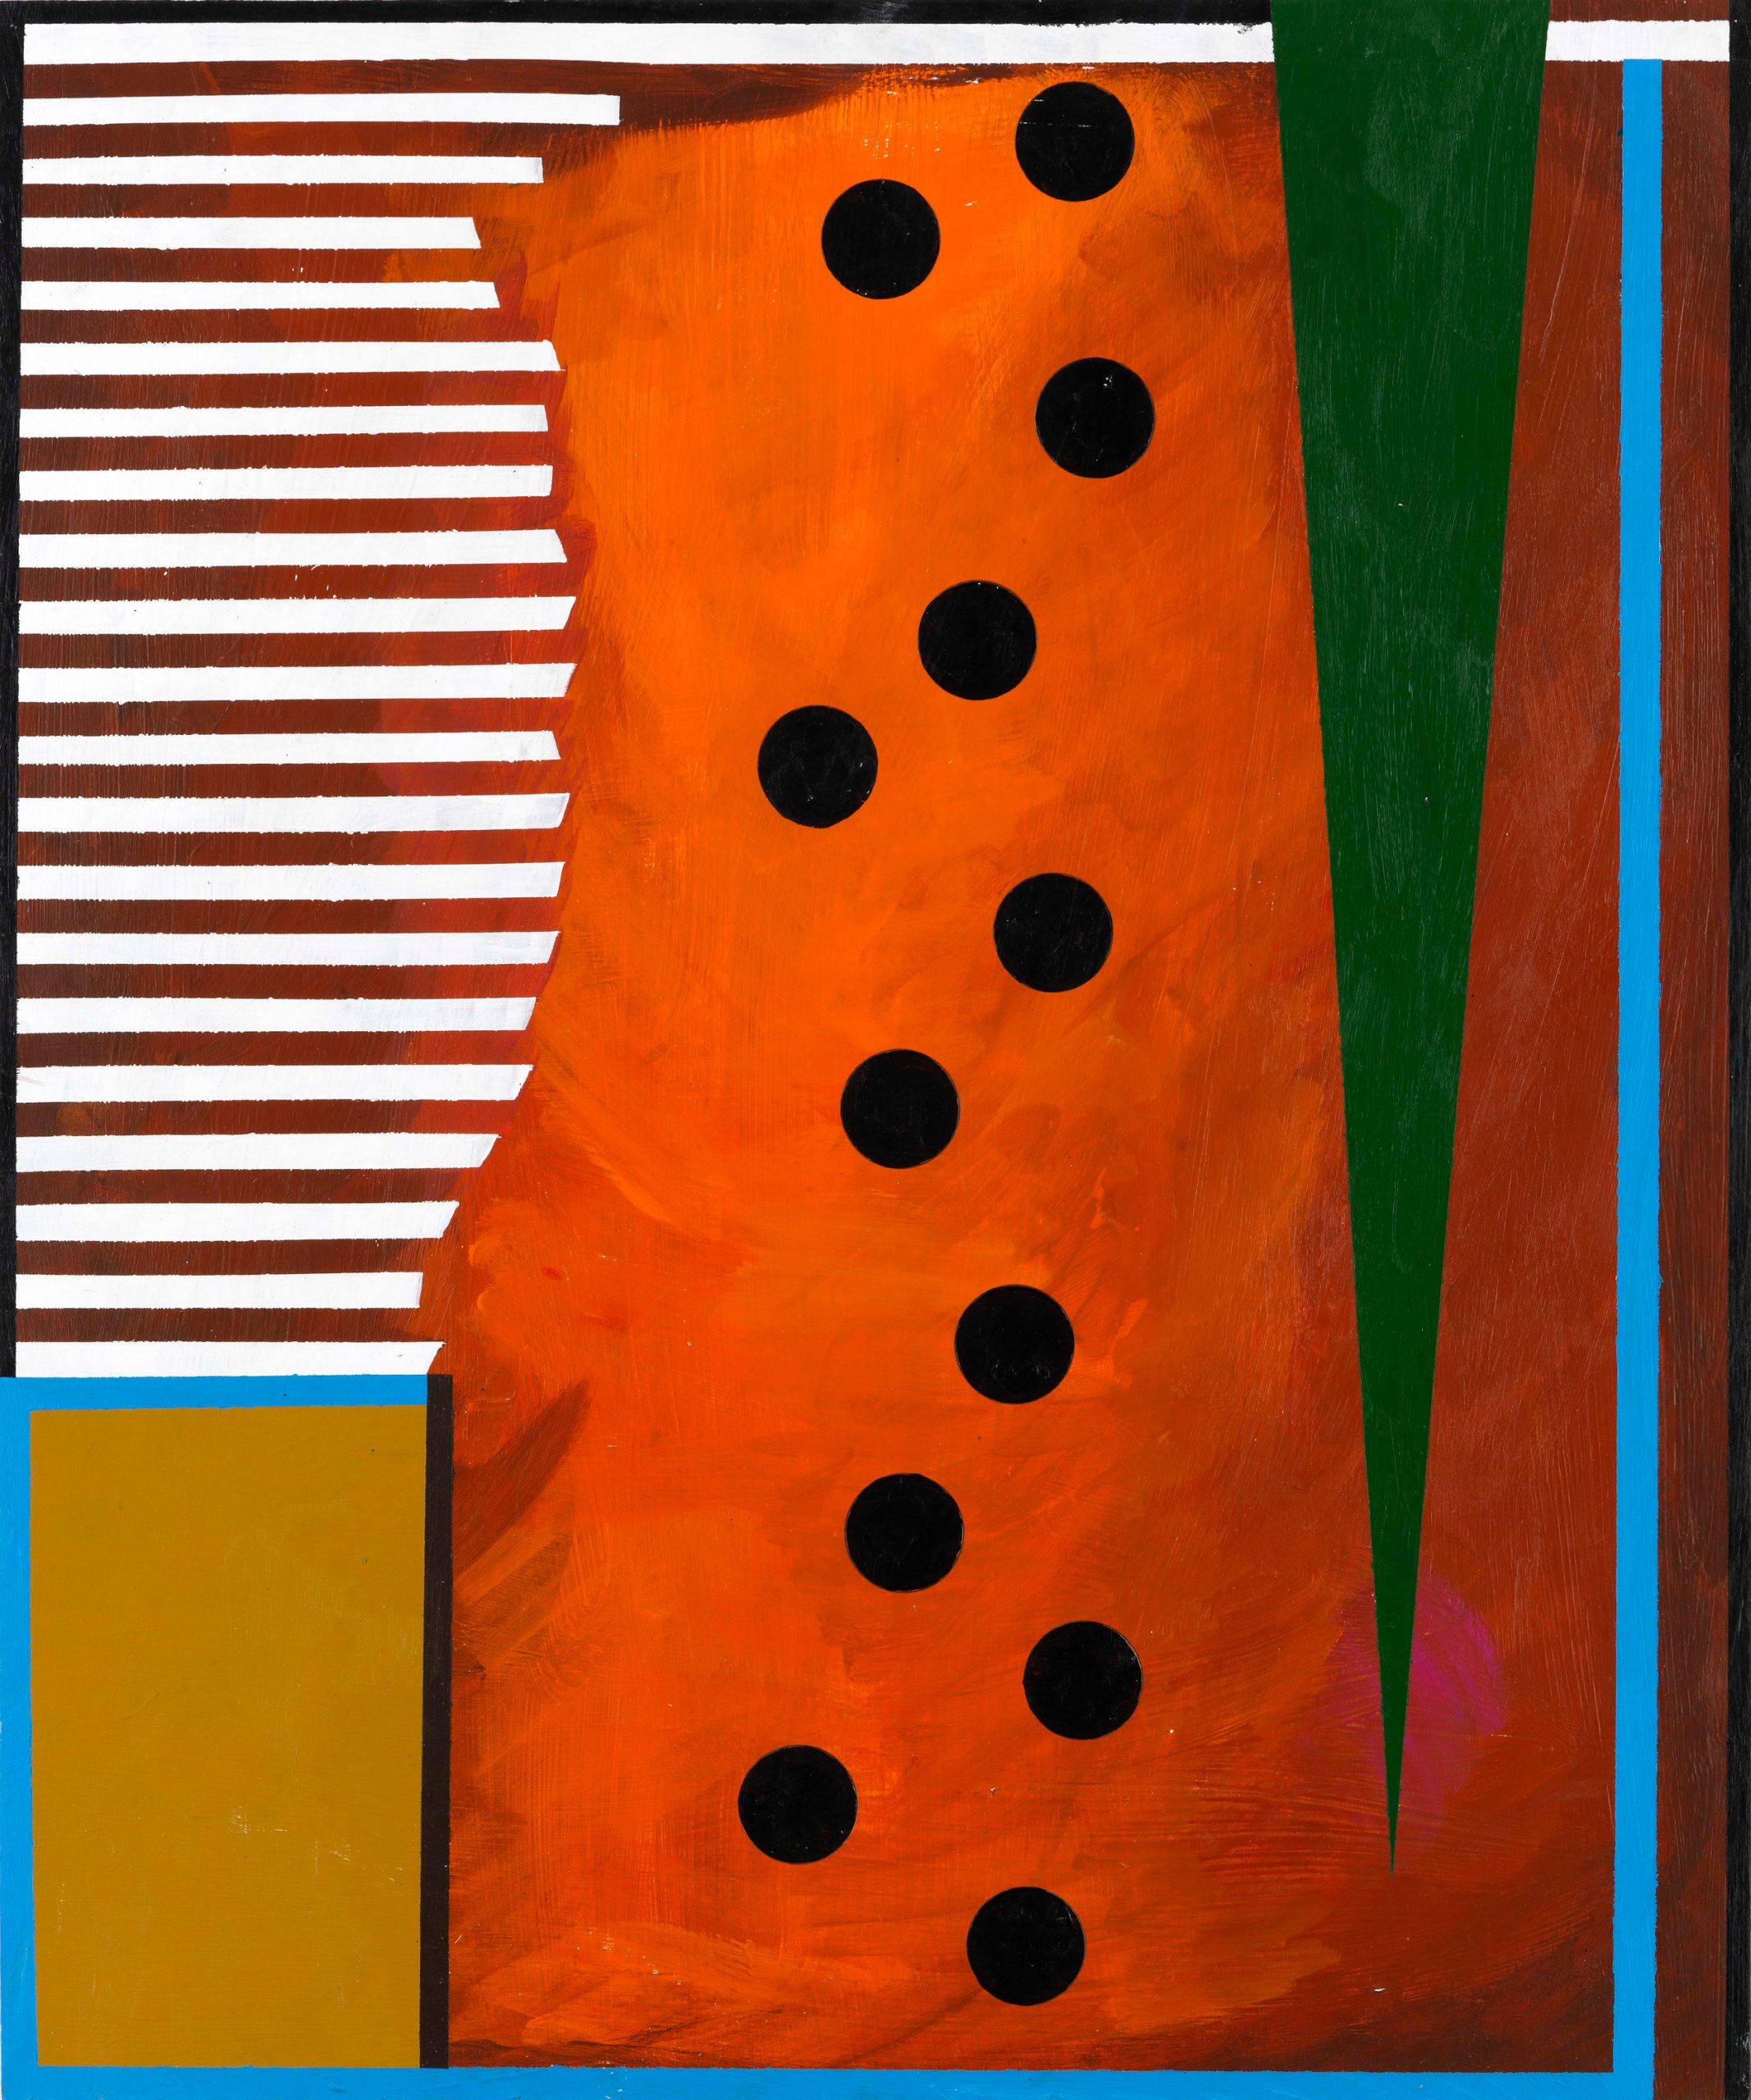 Vase, 2011, Acryl auf Holz, 60 x 50 cm